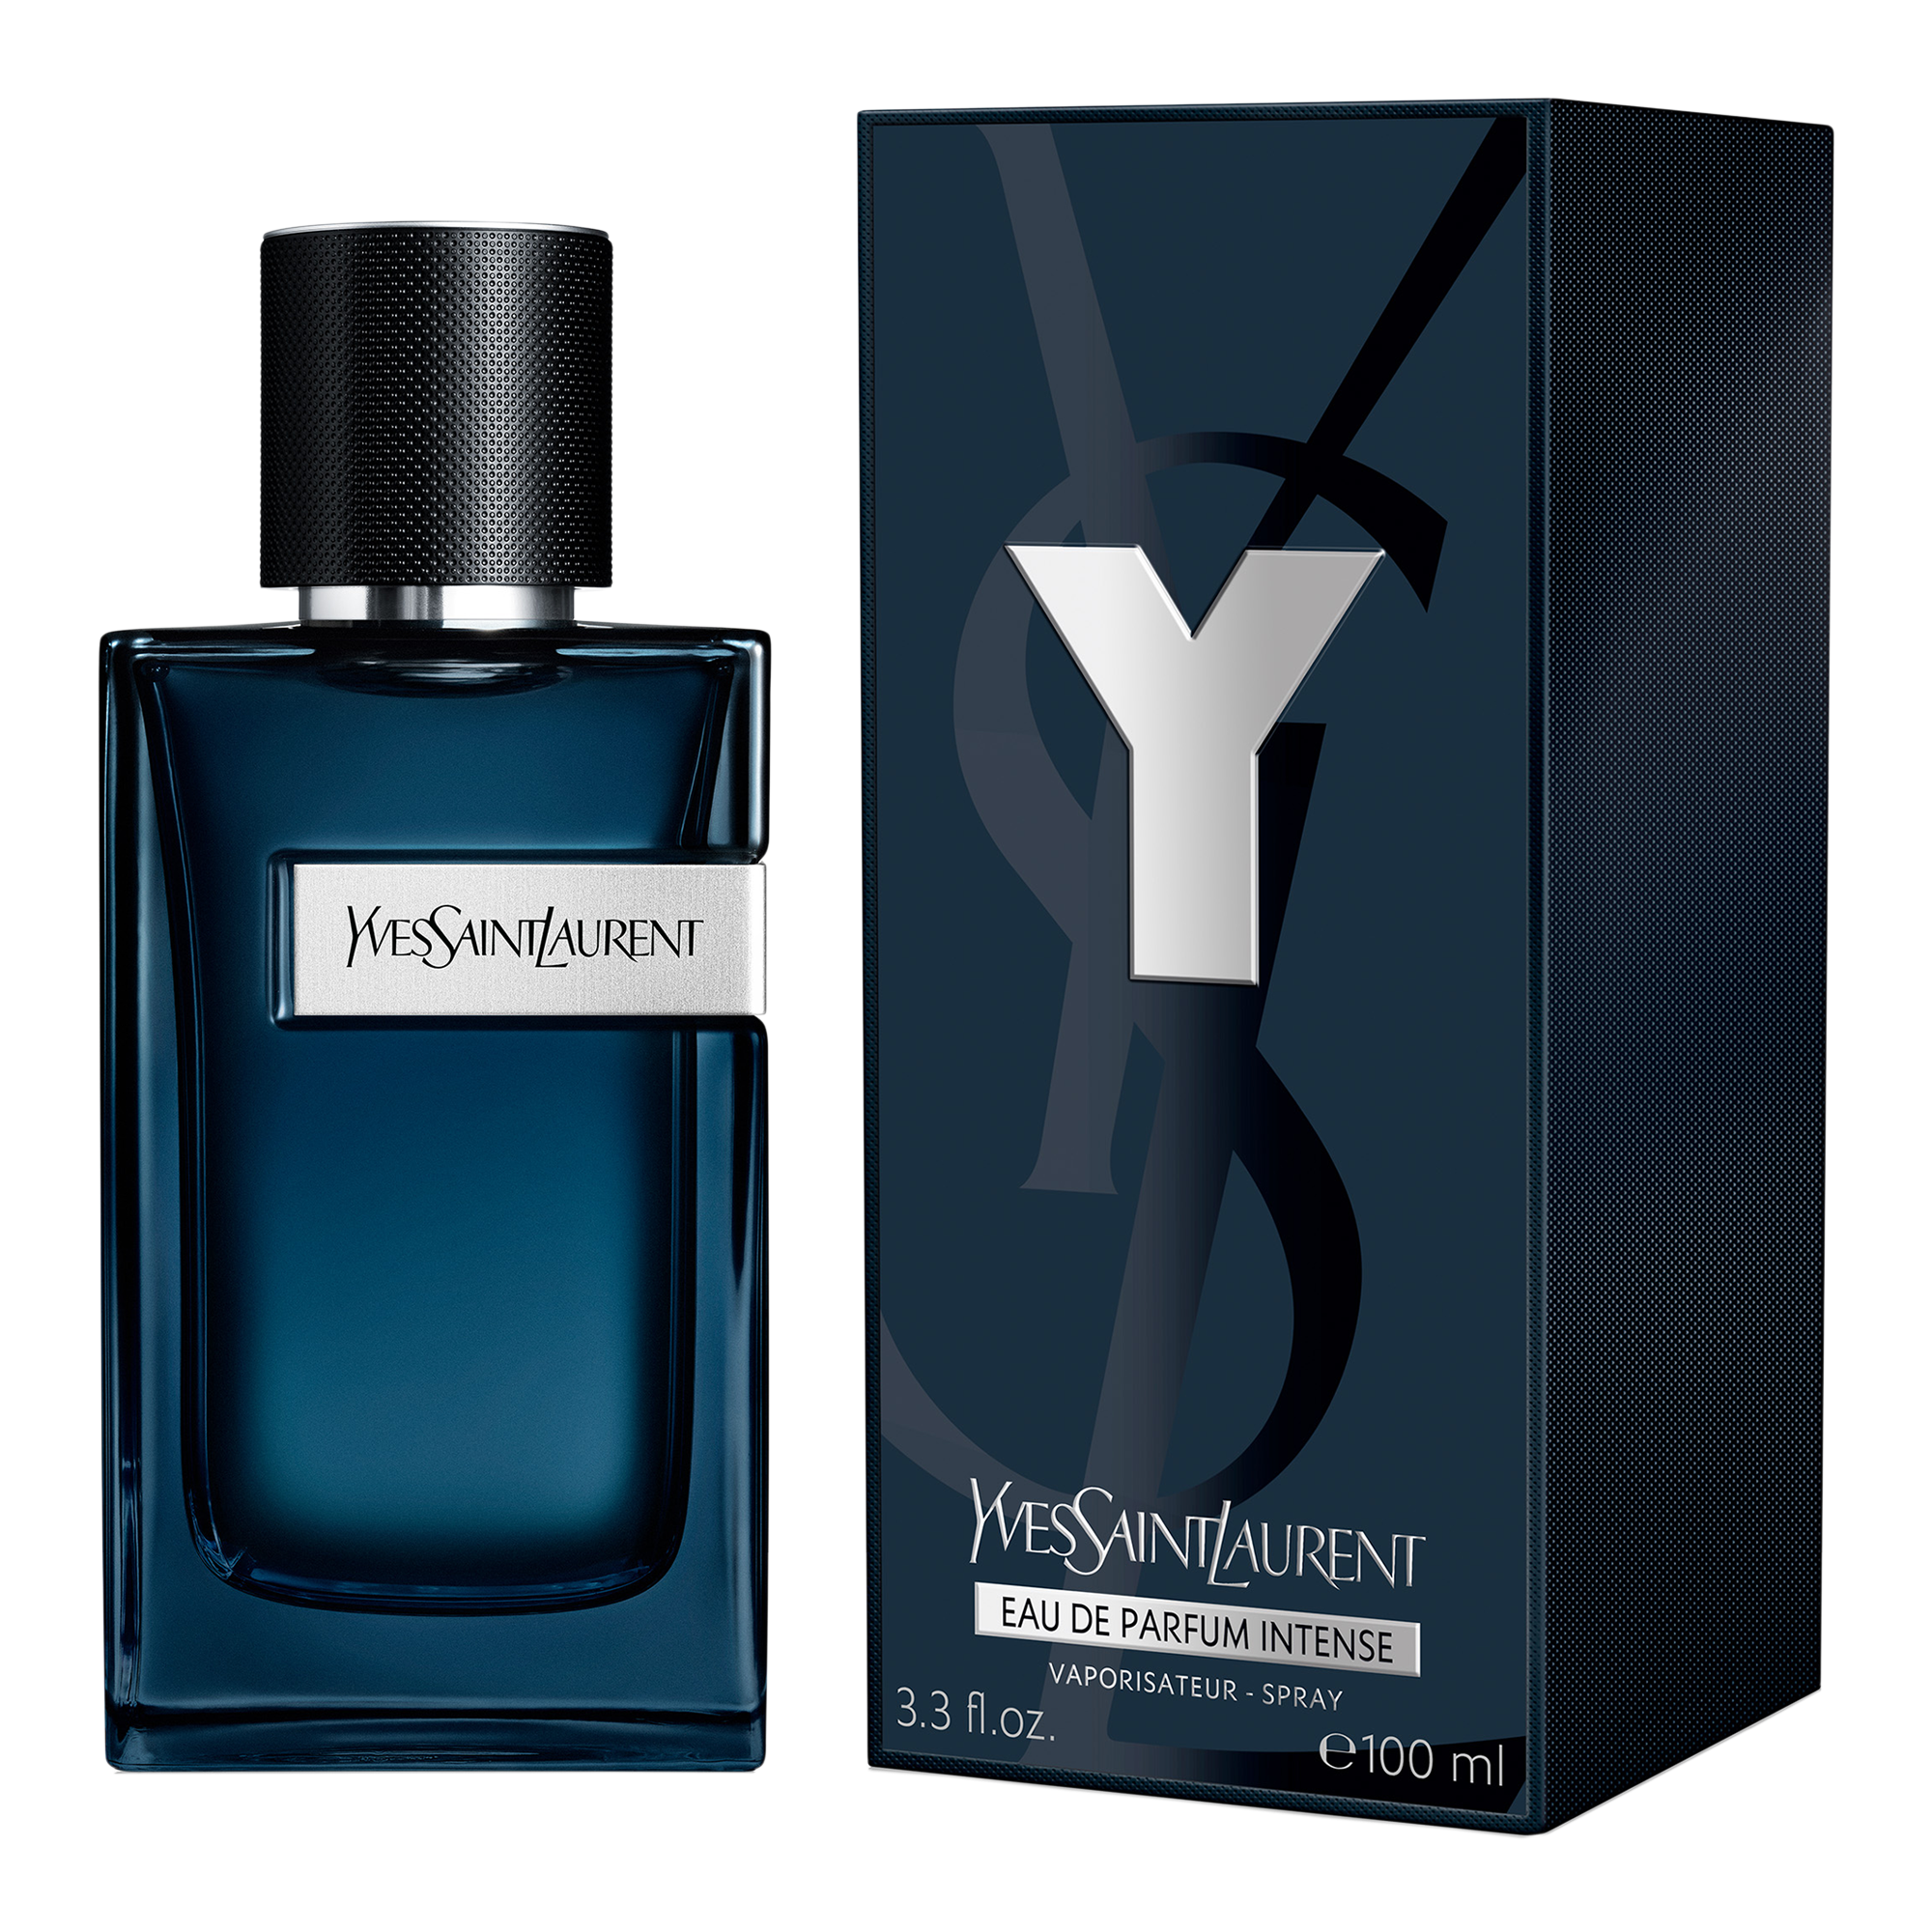 Y Eau de Parfum Intense - Yves Saint Laurent | Ulta Beauty